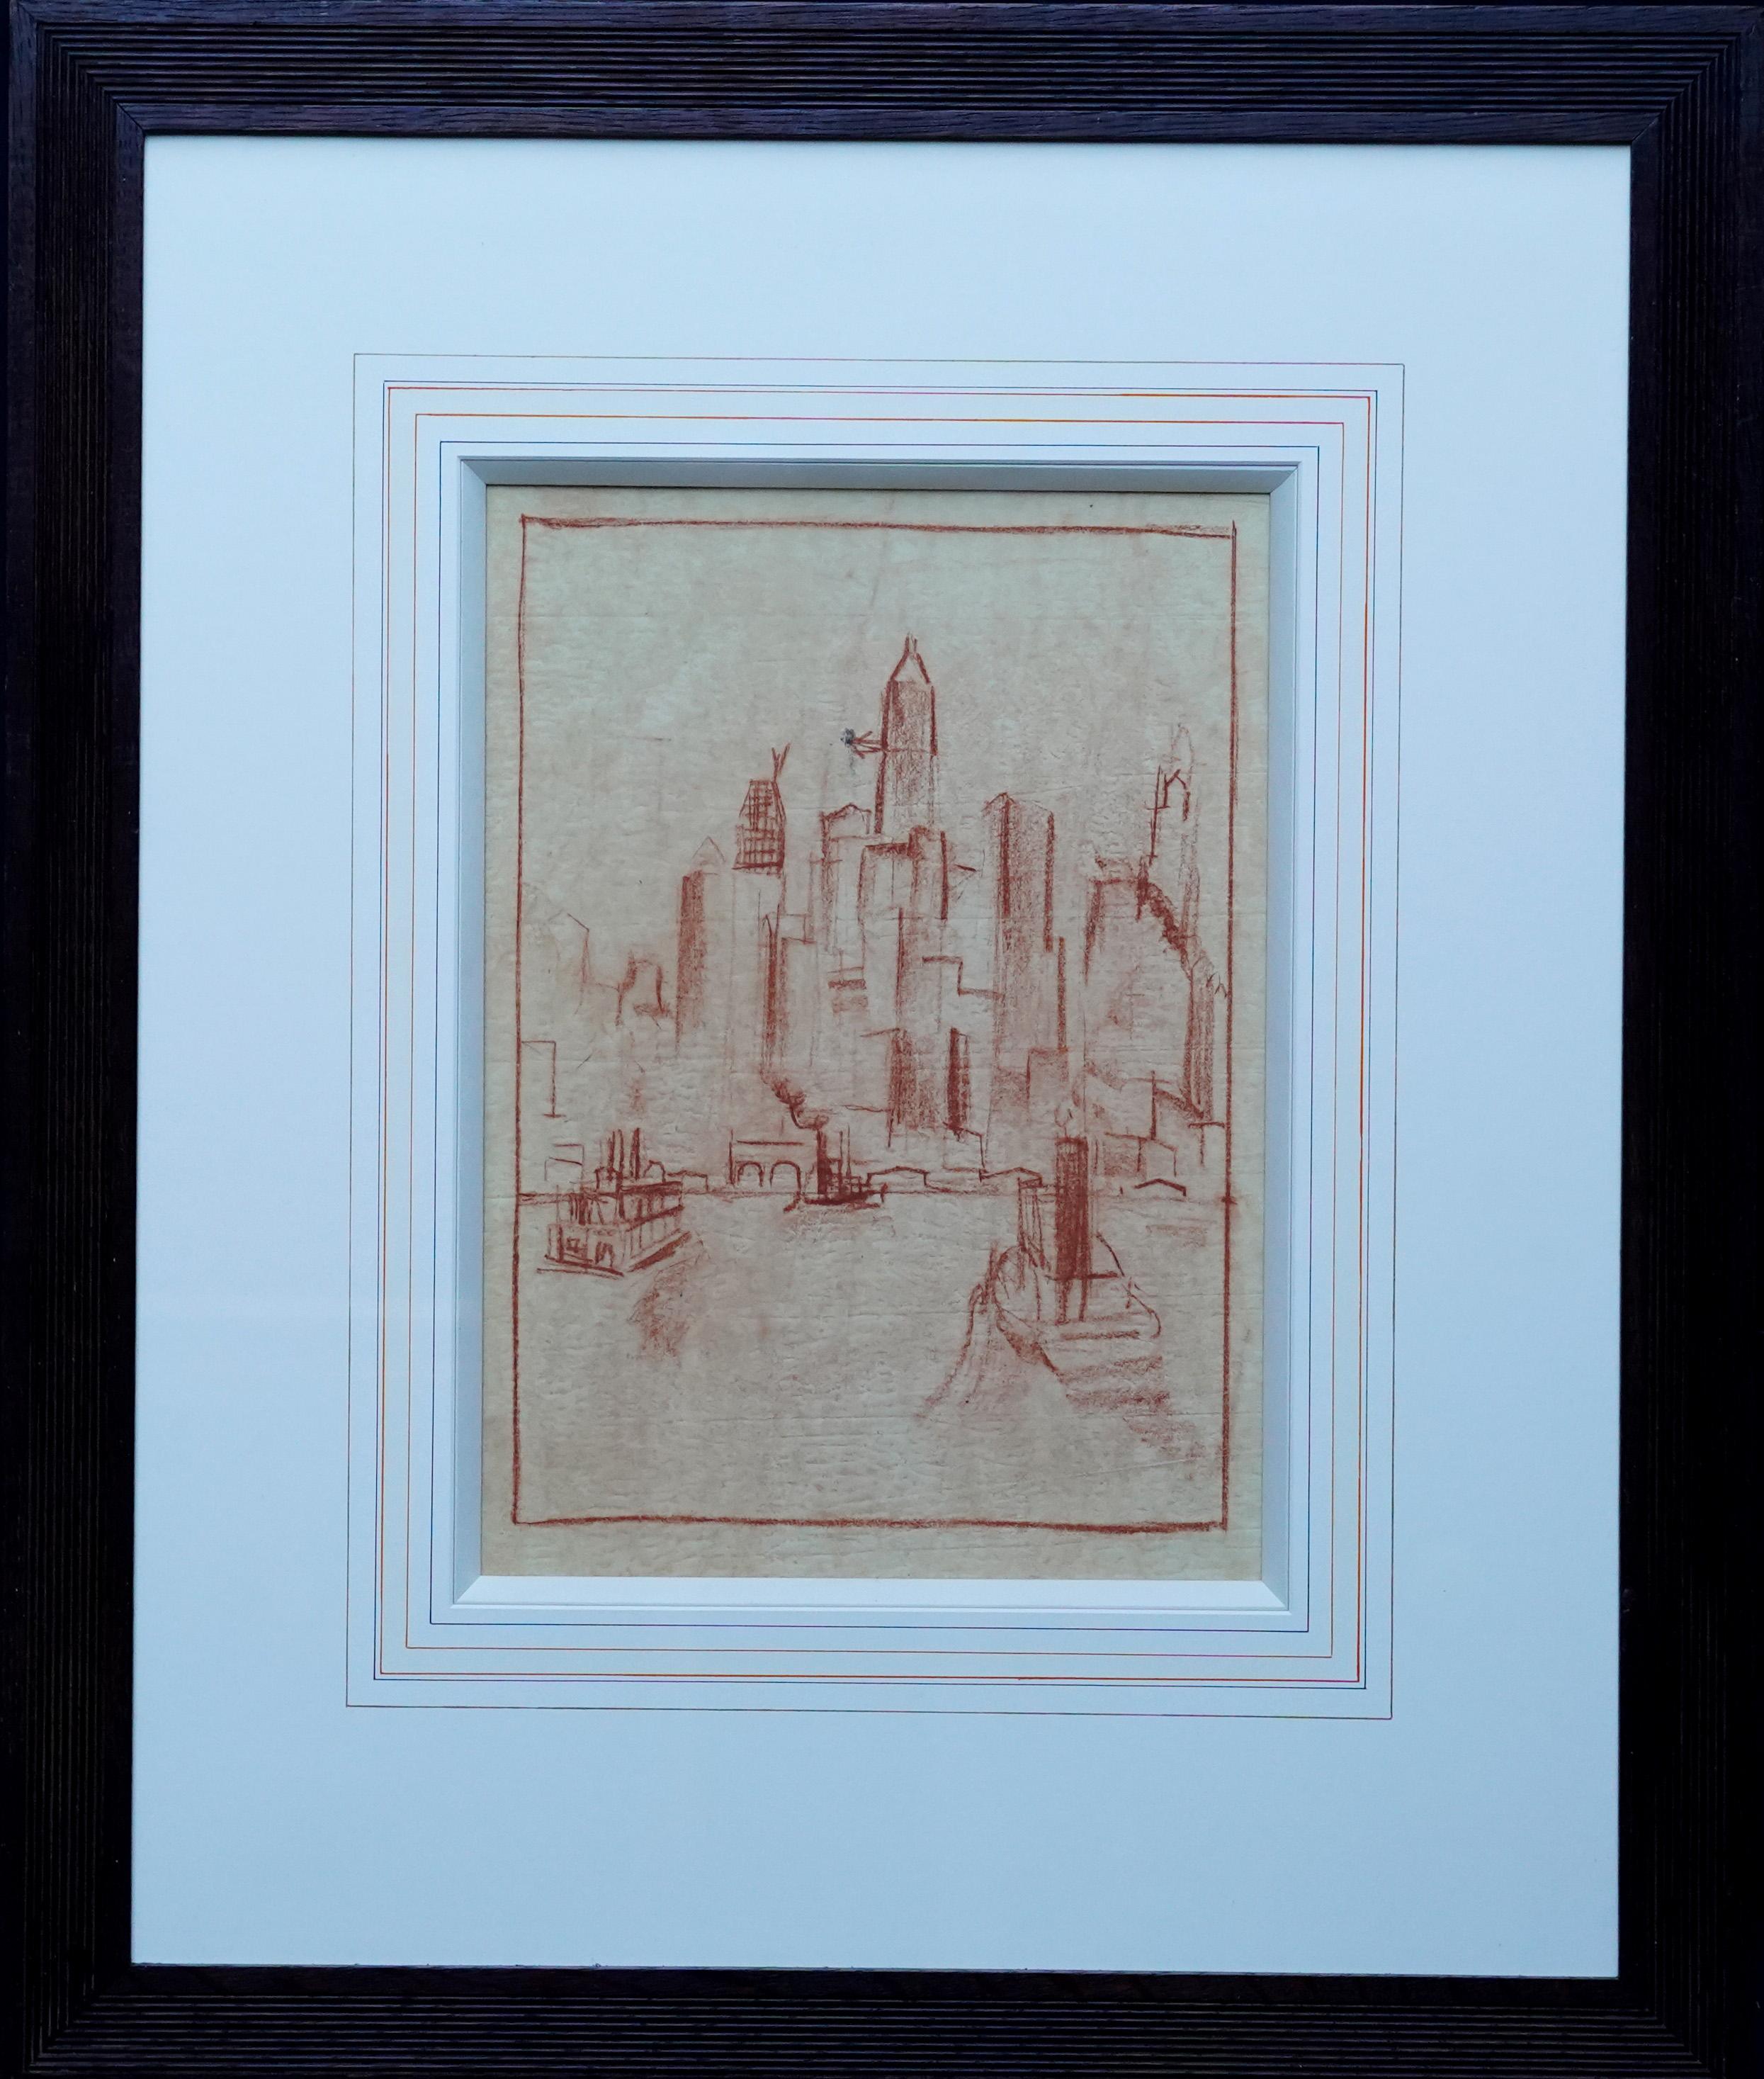 Landscape Art Adriaan Lubbers - Manhattan from the River - dessin au crayon d'art néerlandais des années 1920 dans la ville de New York